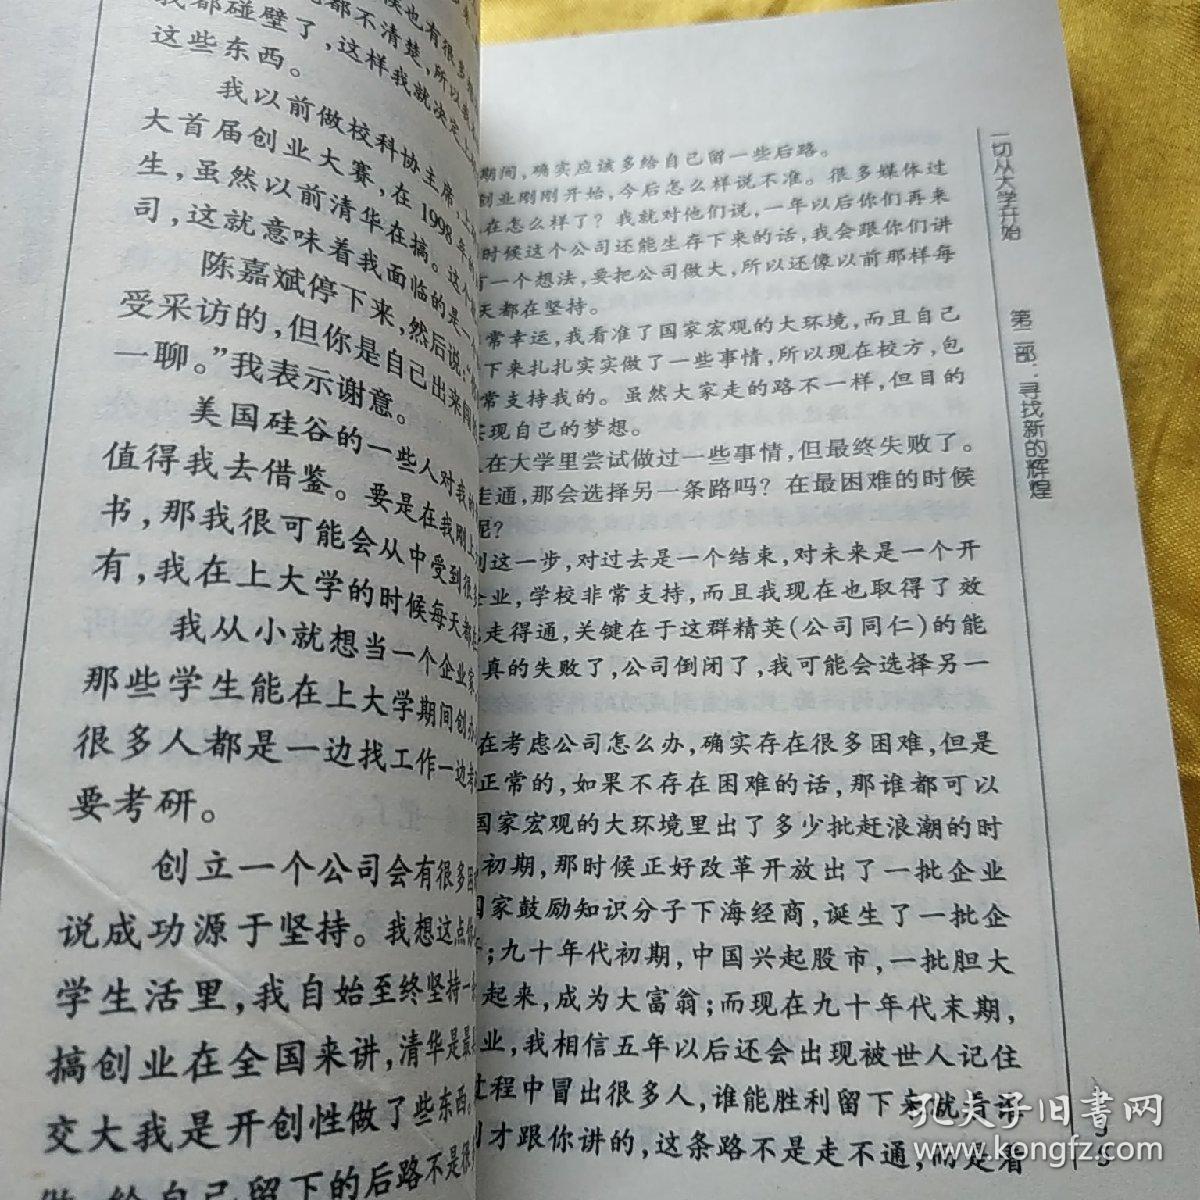 一切从大学开始: 作者行程万里的访谈实录 中国十大名校学生的真实声音    书内有折角